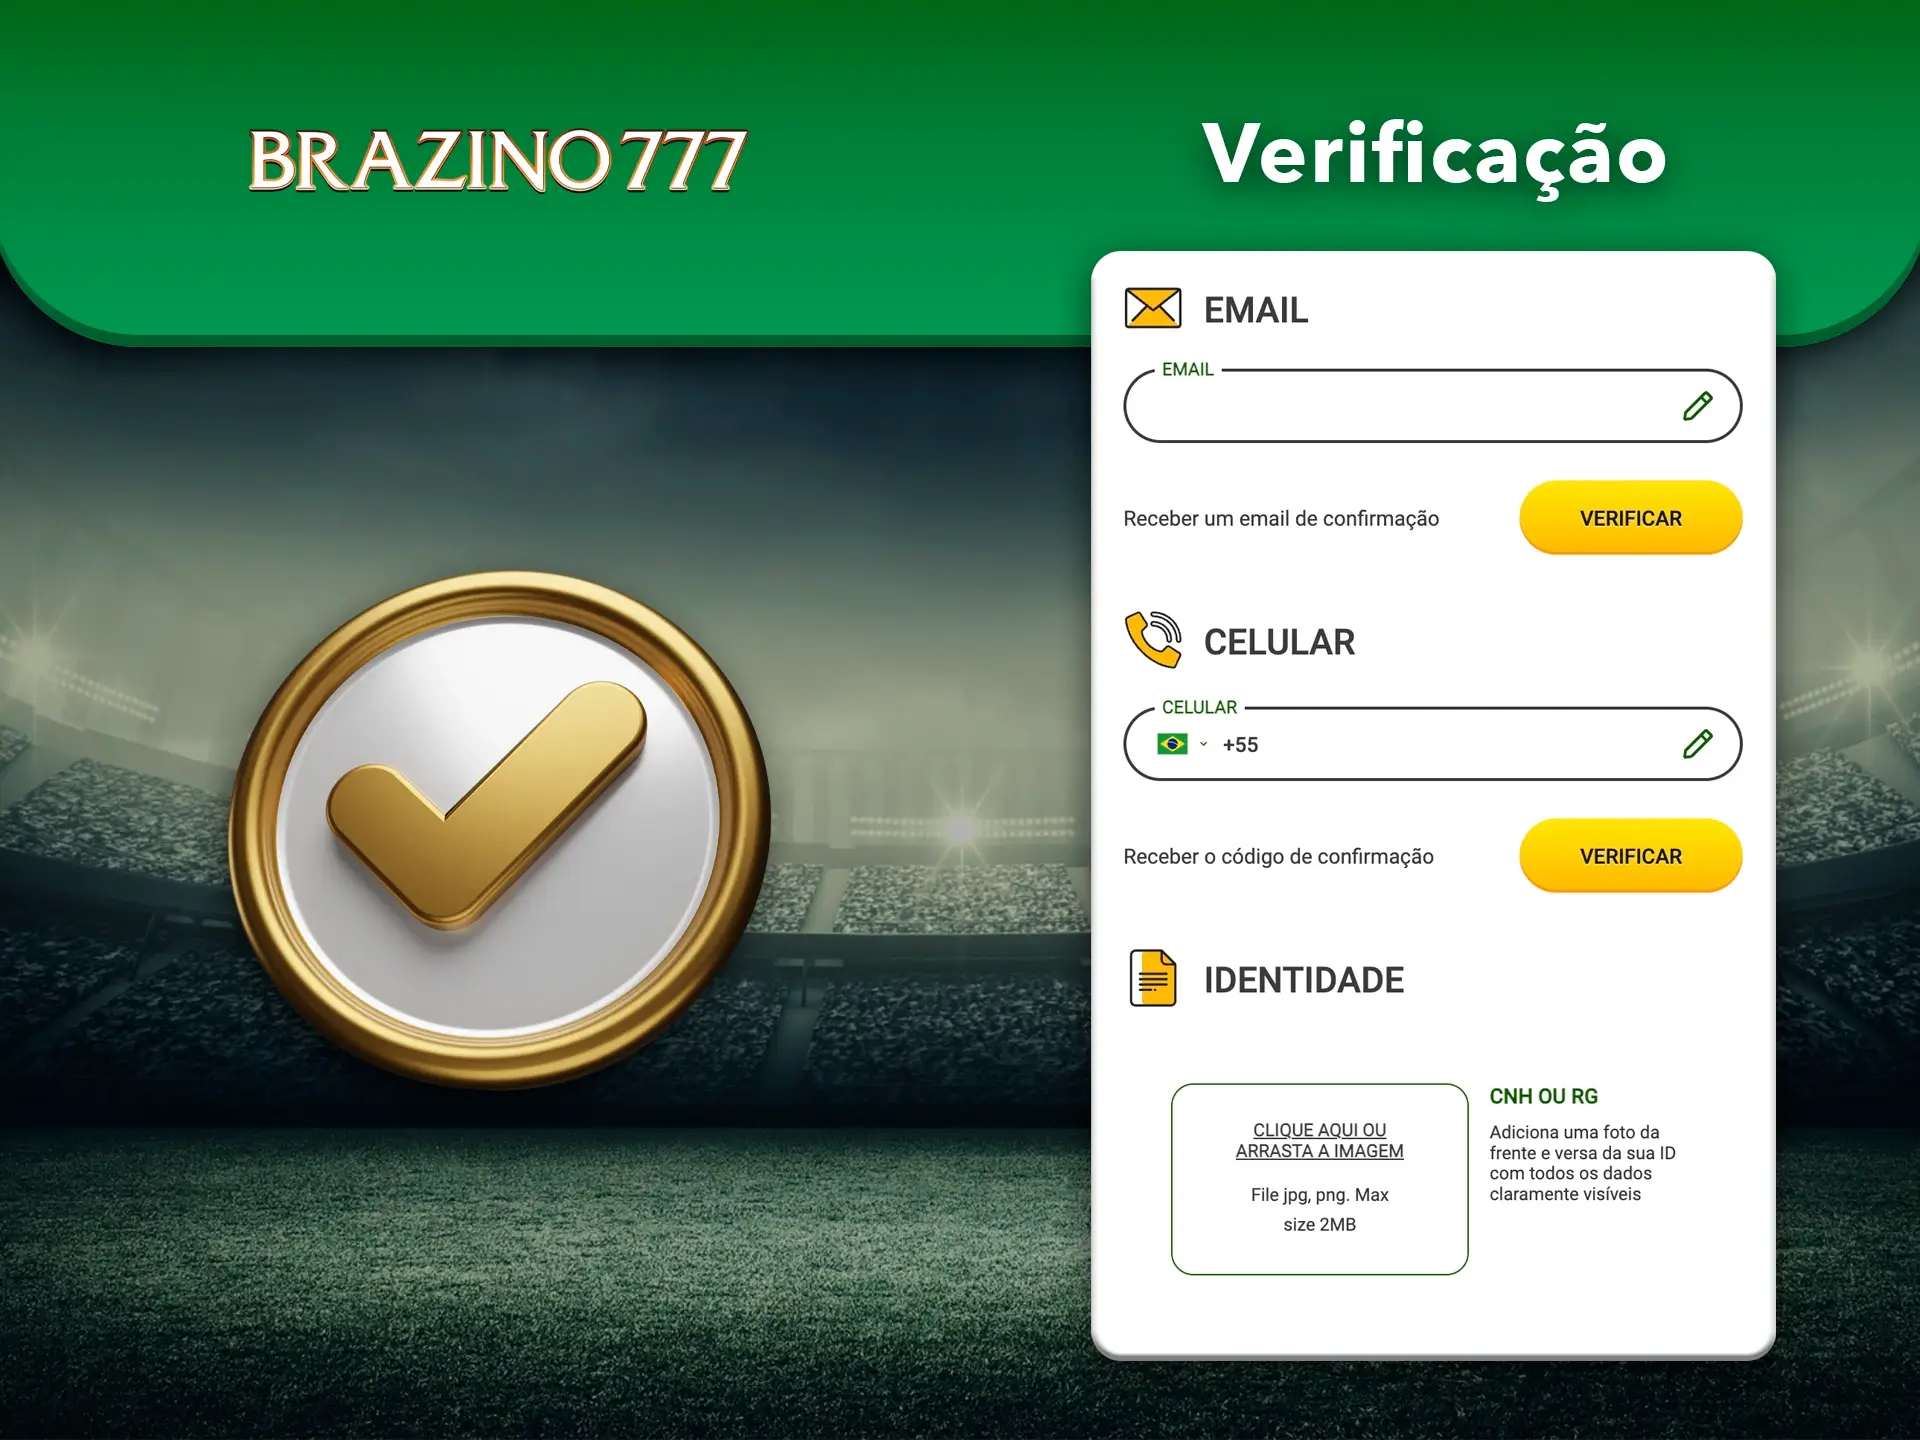 Confirme o seu perfil Brazino777 para obter acesso total às funcionalidades da sua conta.